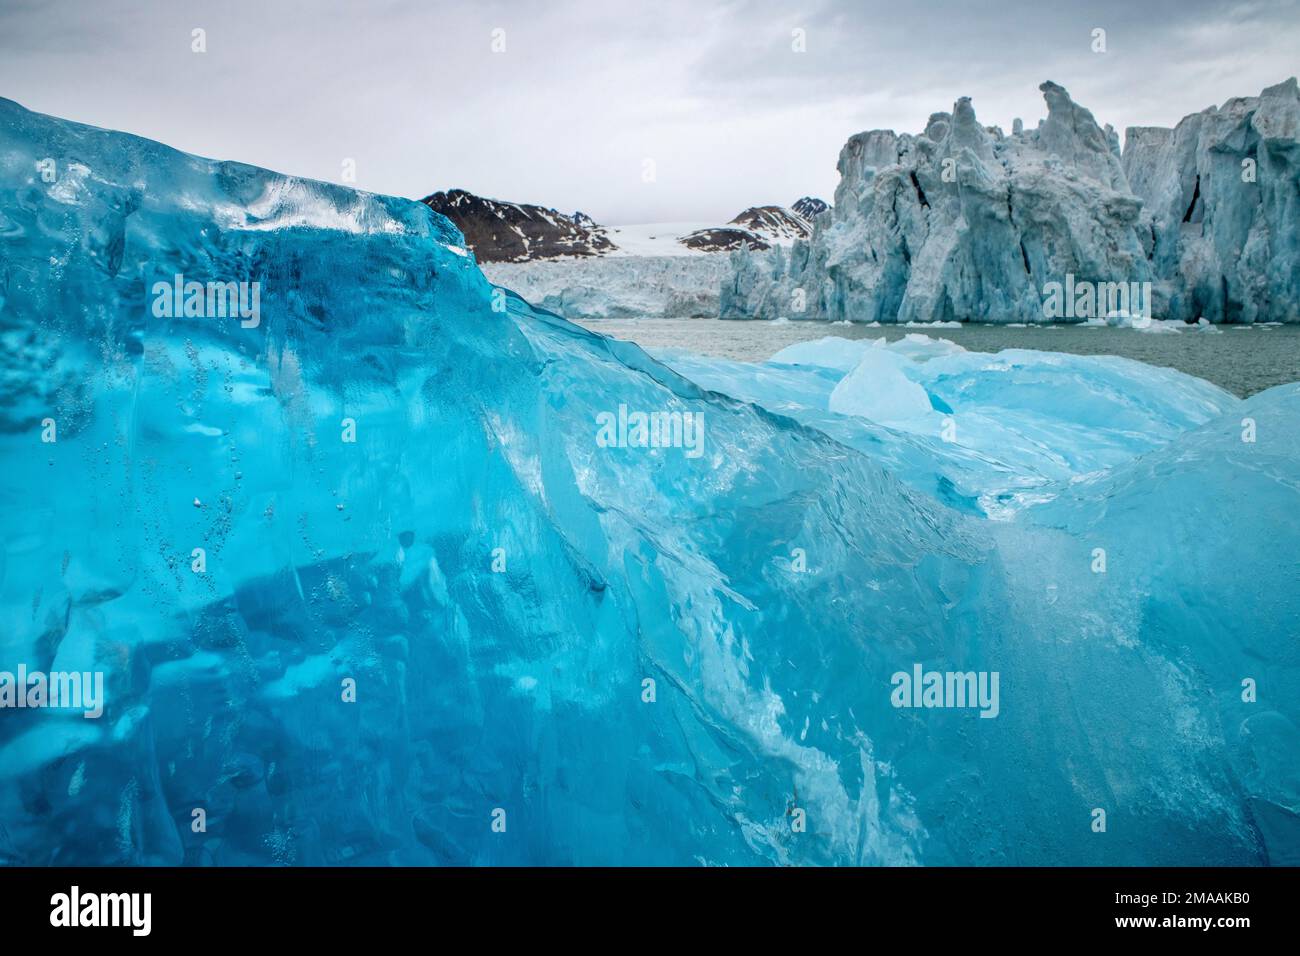 De beaux icebers bleus. Expédition navire de croisière Greg Mortimer dans l'archipel de Svalbard, dans l'Arctique de la Norvège. Croisière en zodiaque à Lilliehookbreen. Les glaciers sont lents Banque D'Images